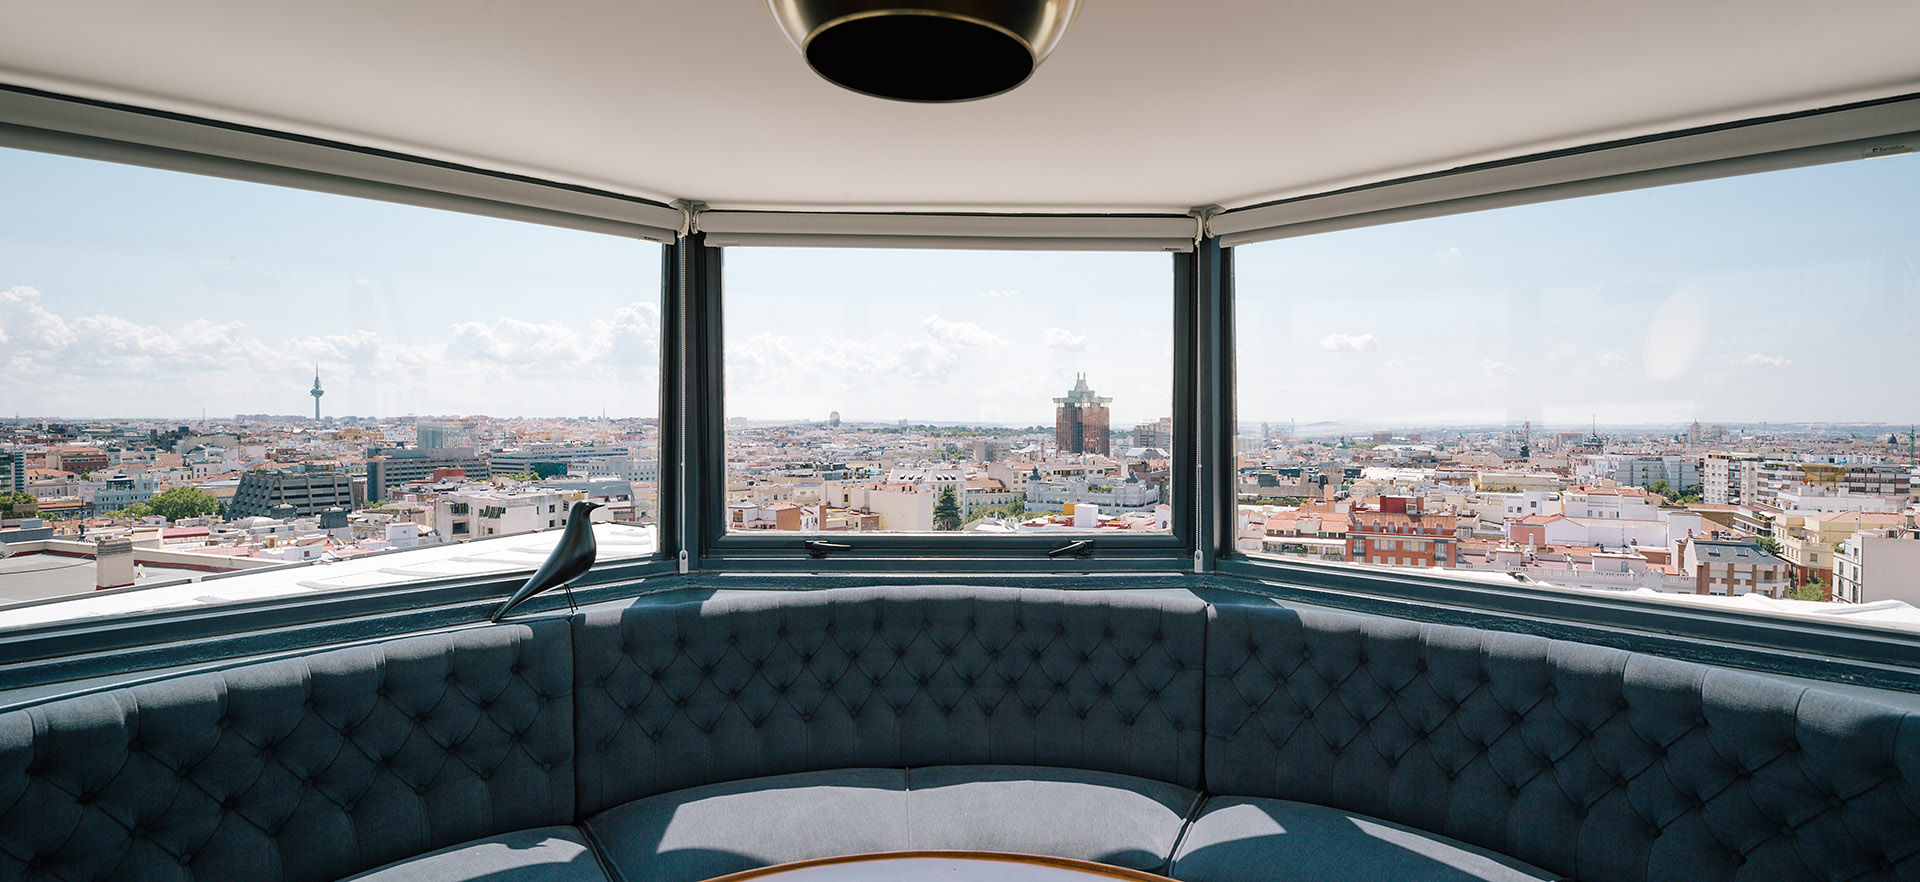 “Un chalet en el cielo de Madrid”, ImagenSubliminal ImagenSubliminal Phòng khách